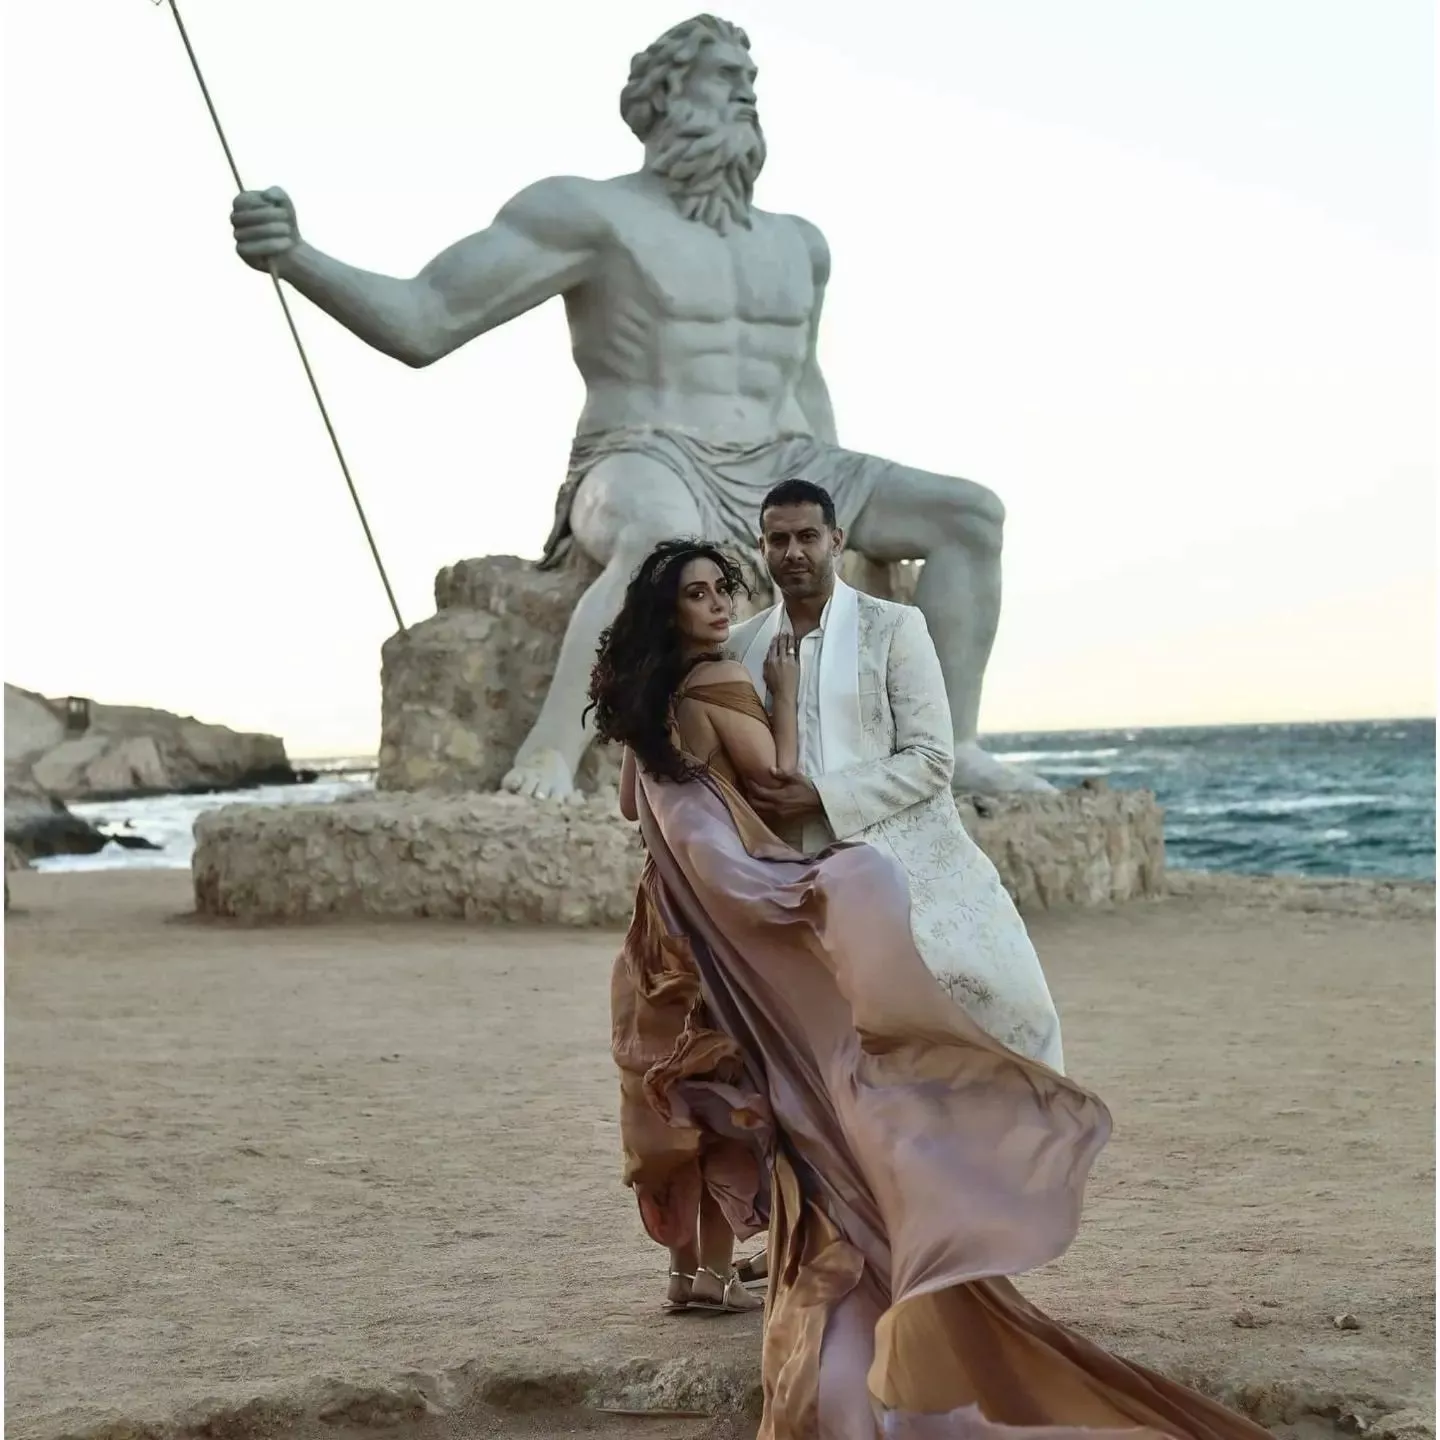 صور بسنت شوقي ومحمد فراج في ليلة الحنة: عروسه إغريقية ساحرة!